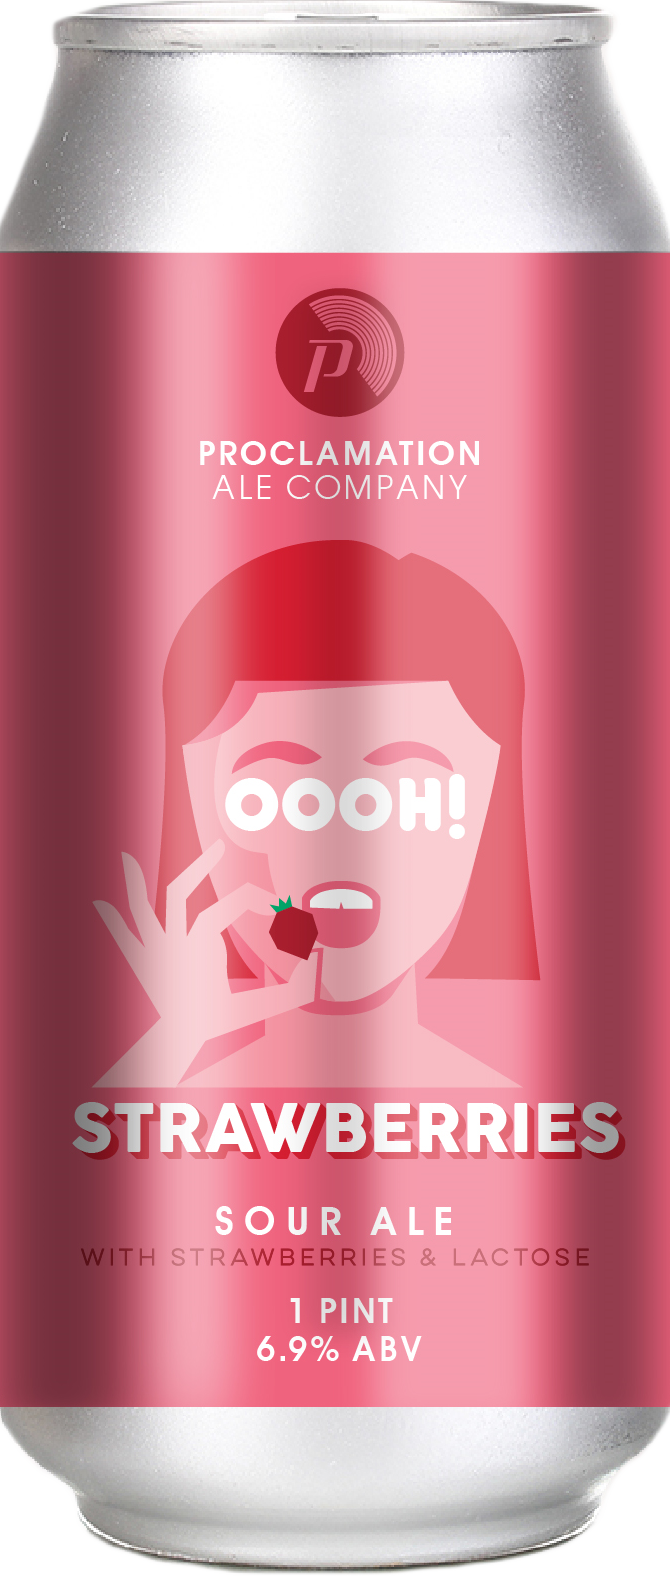 Produktbild von Proclamation Oooh! Strawberries